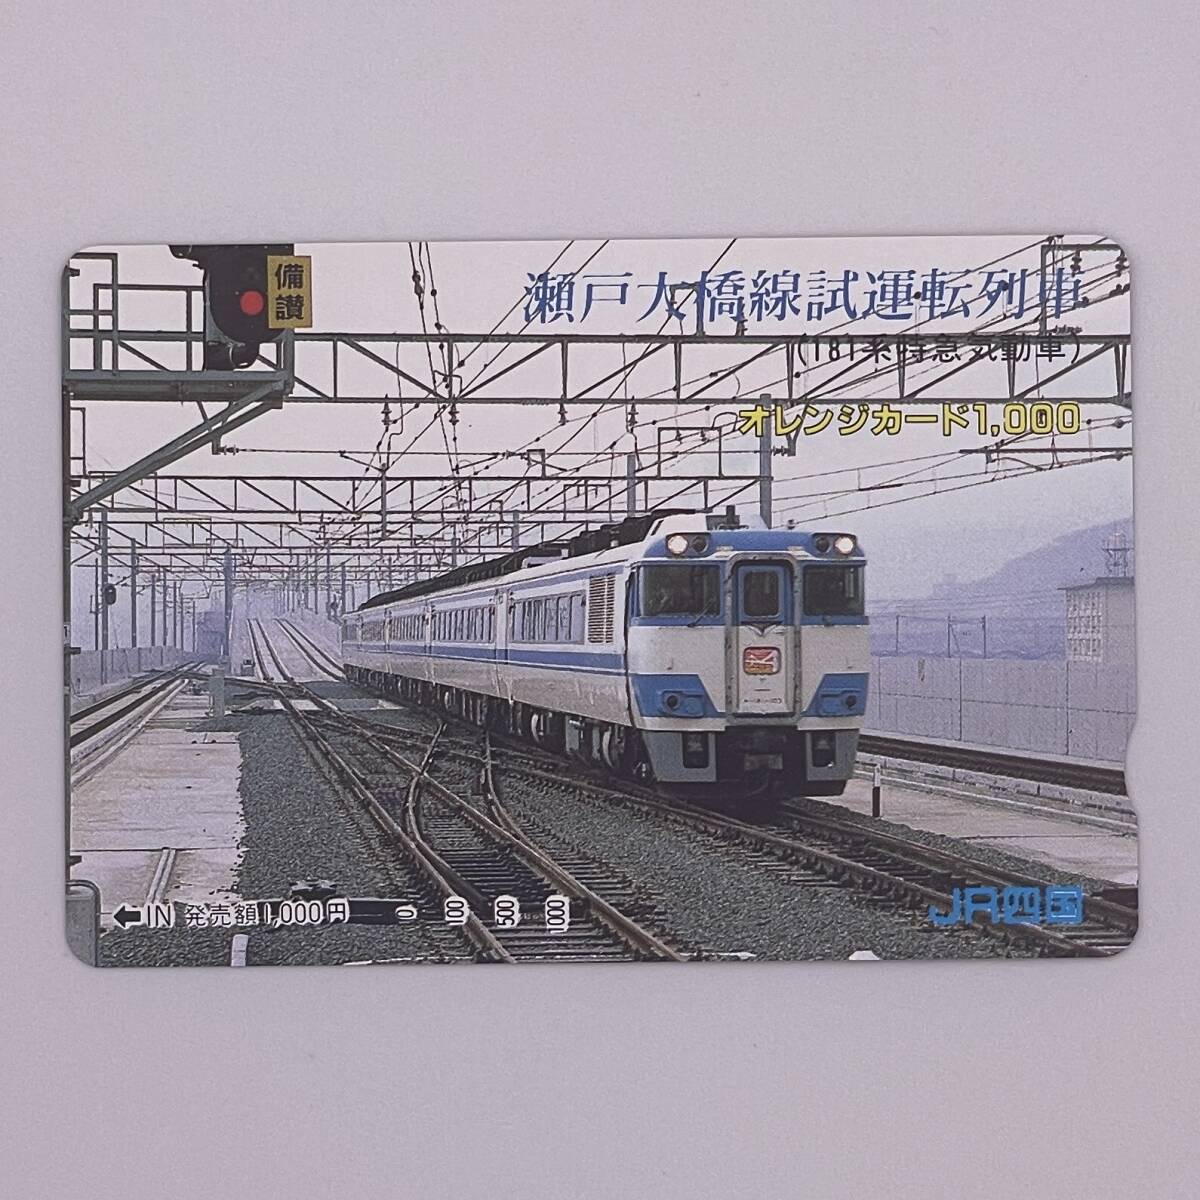 オレンジカード キハ181系 瀬戸大橋線試運転列車 JR四国 1000円 未使用の画像1